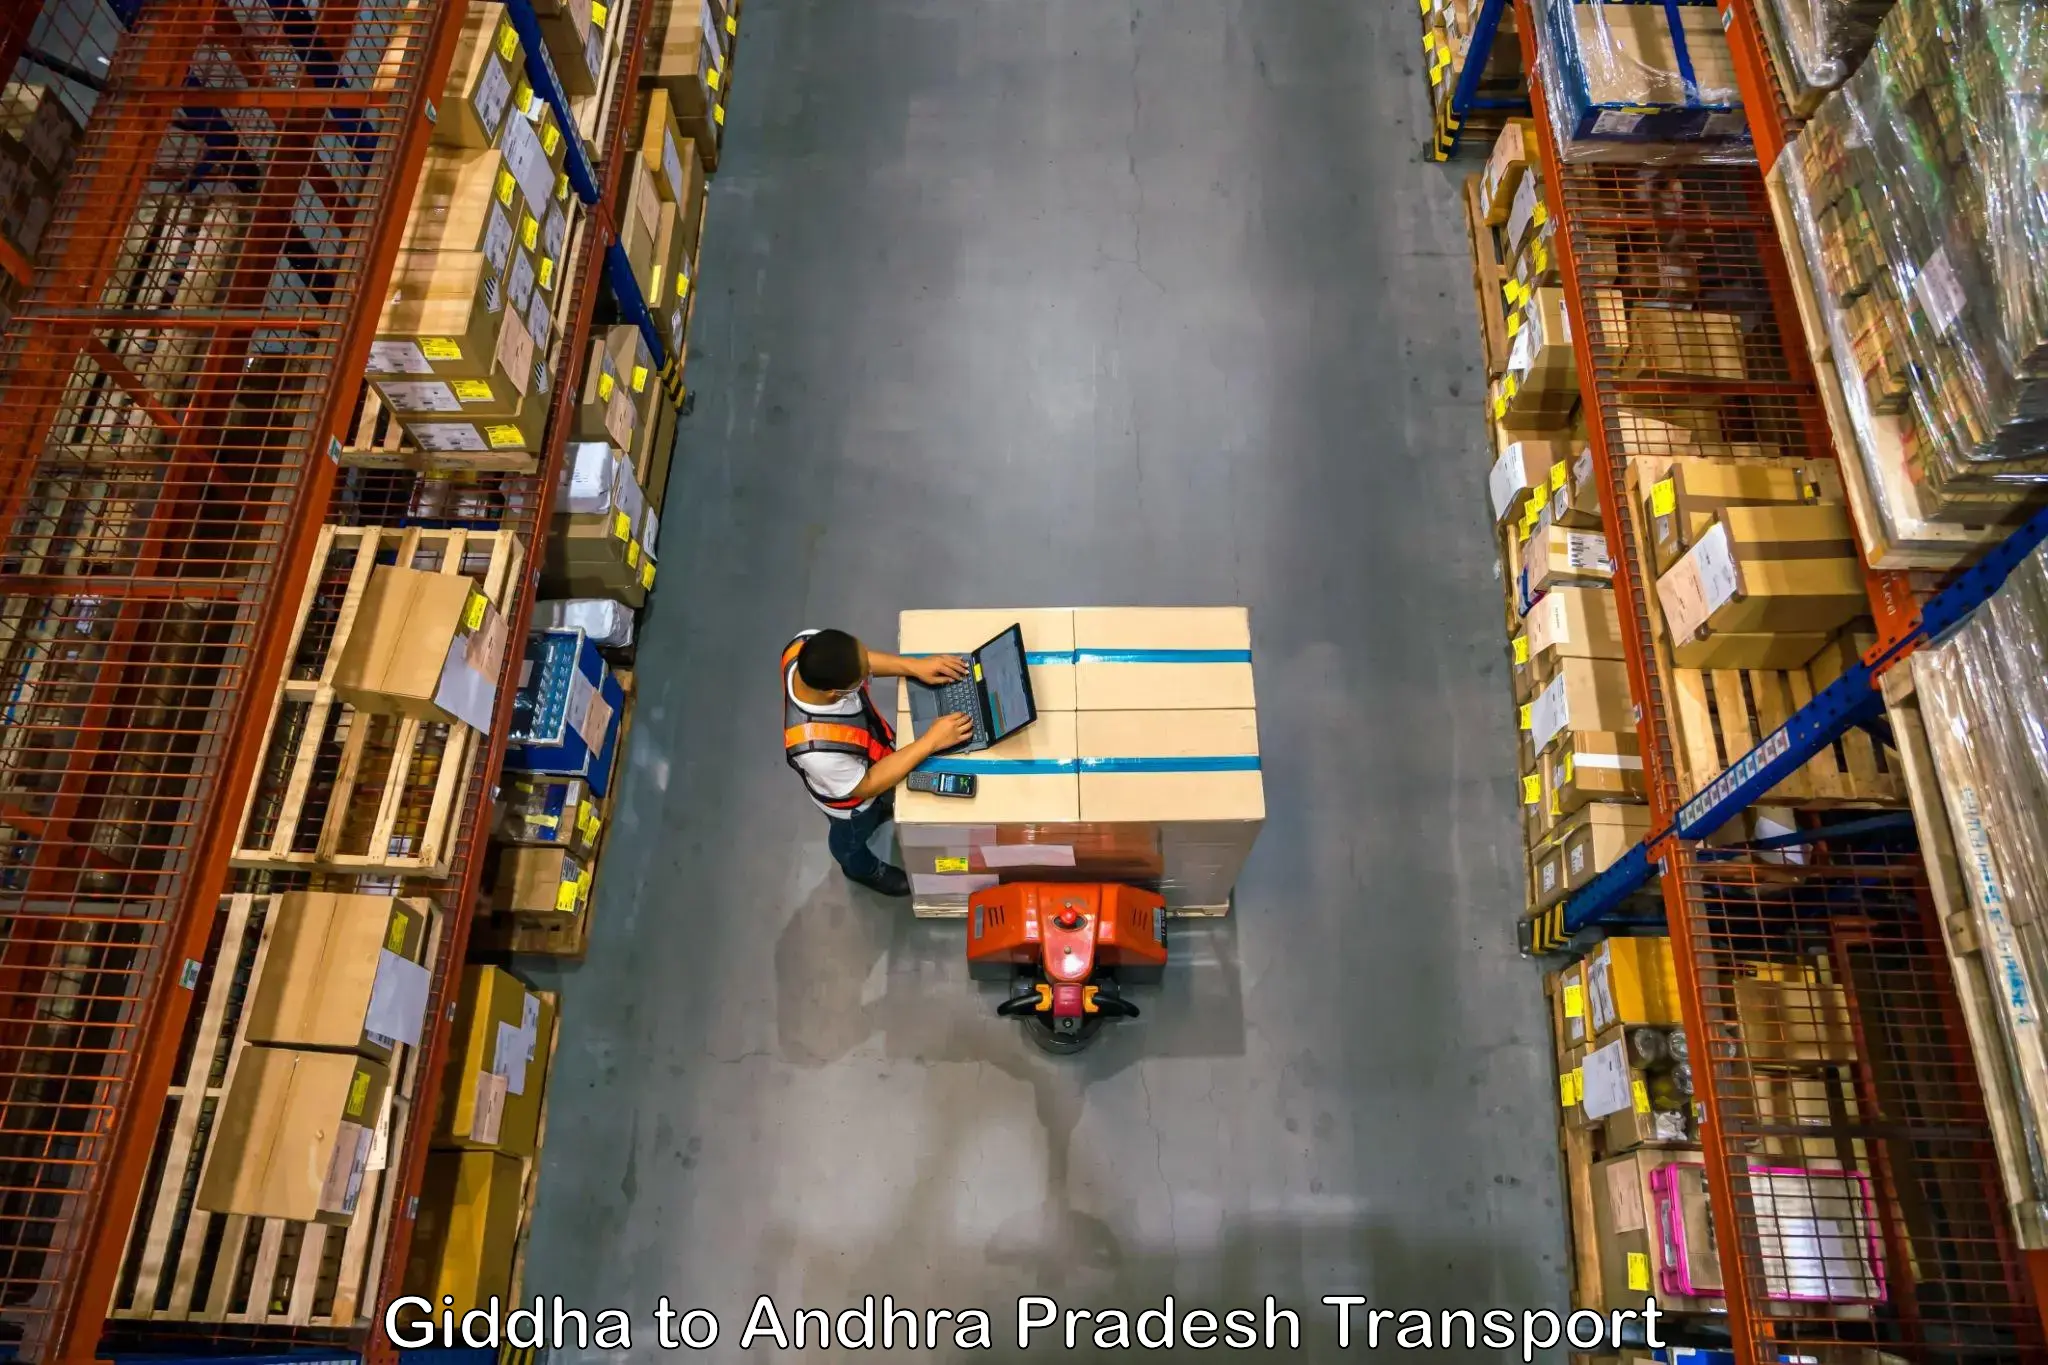 Online transport service Giddha to Devarapalli